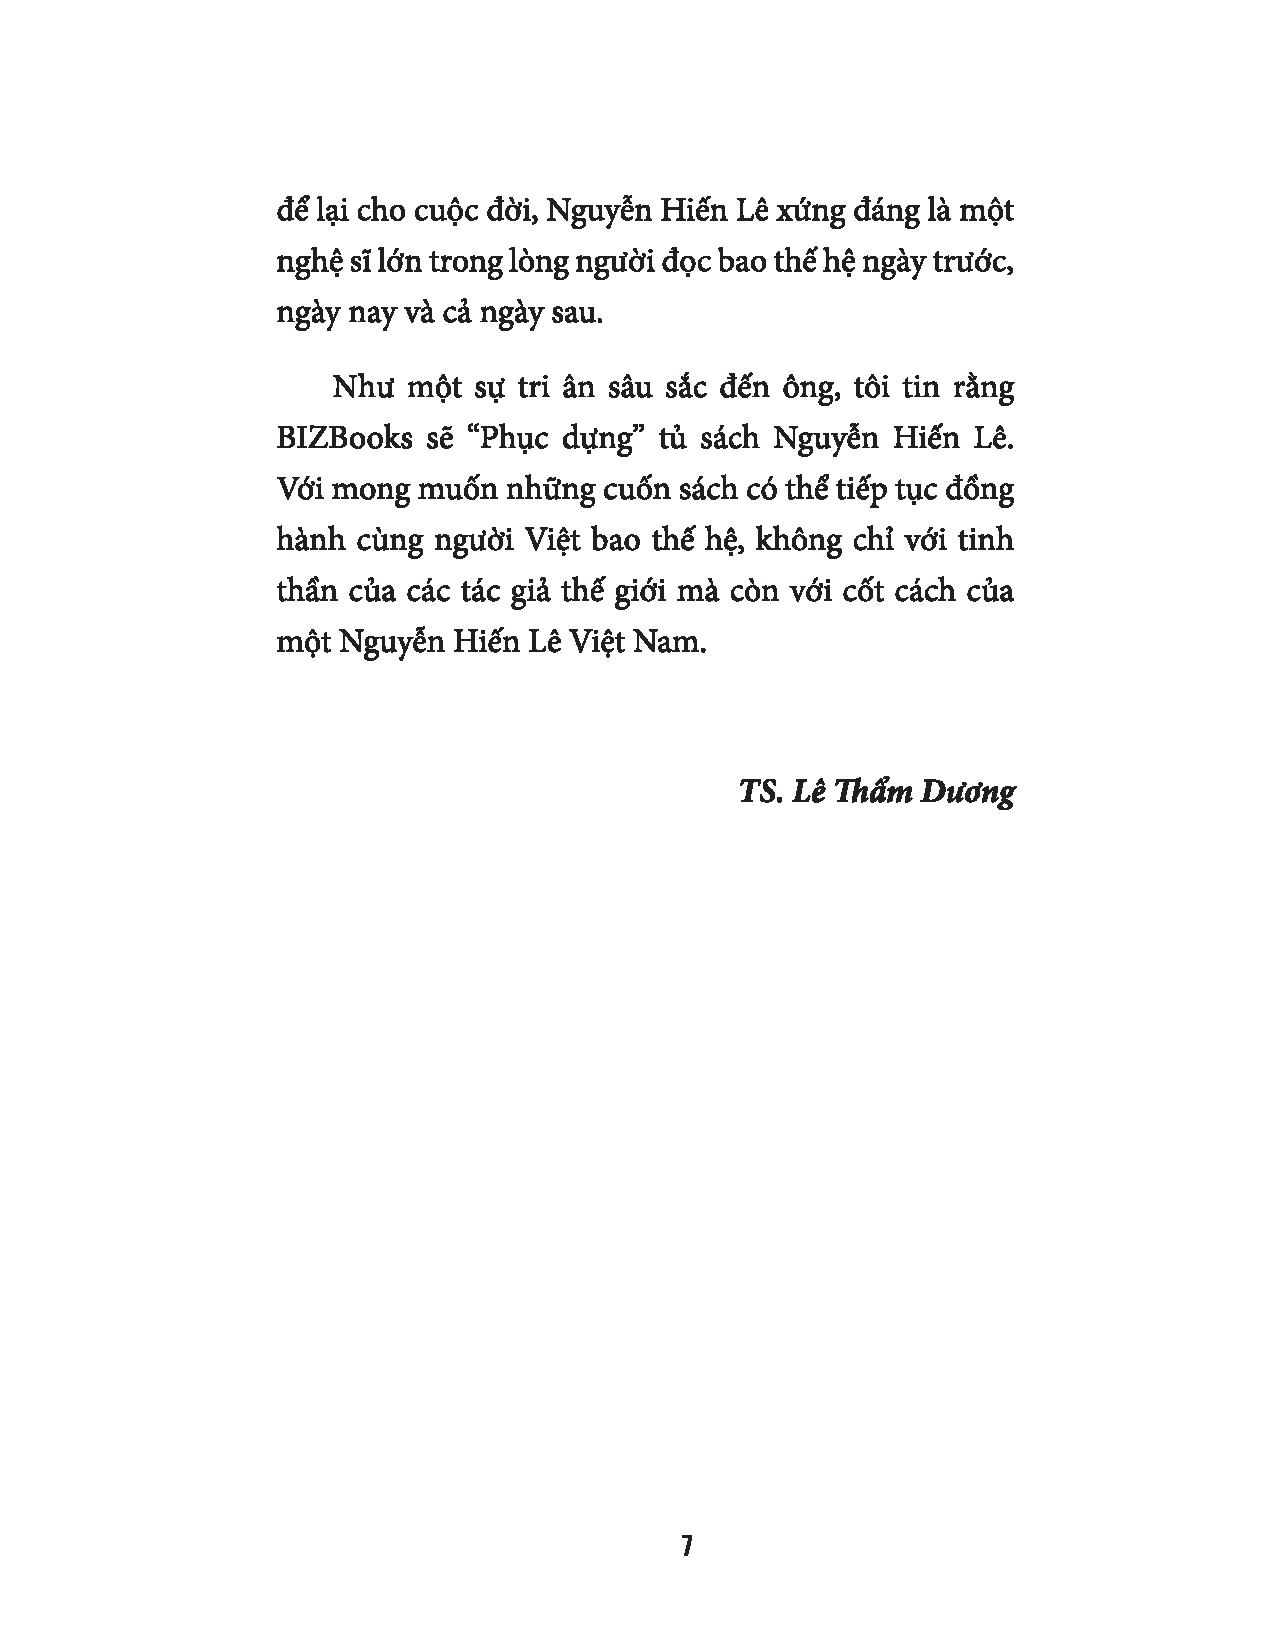 Tay Trắng Làm Nên - Nguyễn Hiến Lê PDF